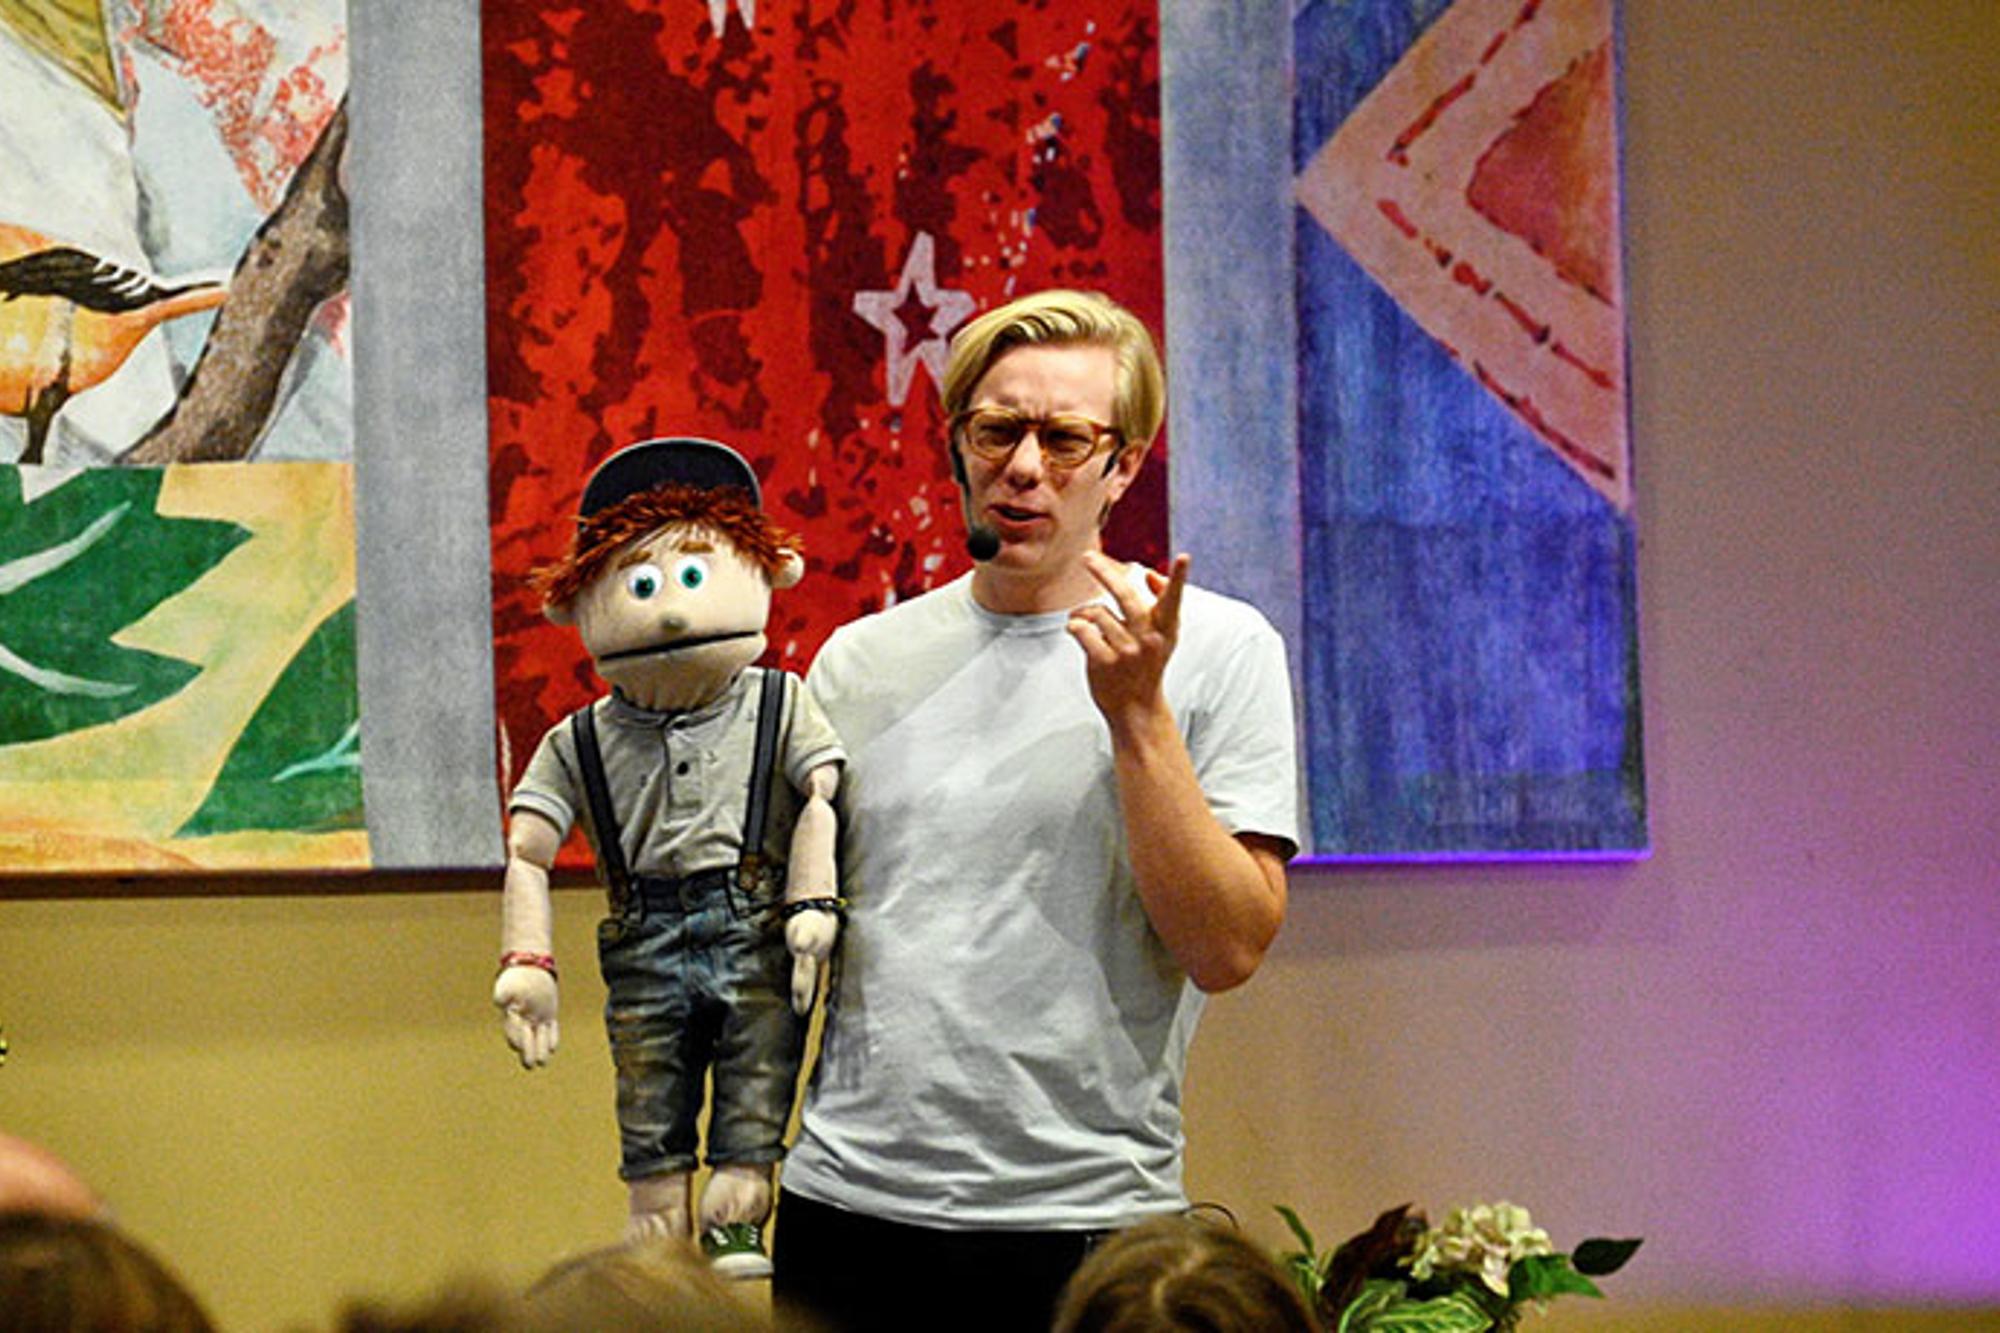 Gabriel med sin docka Åsskar under en föreställning.